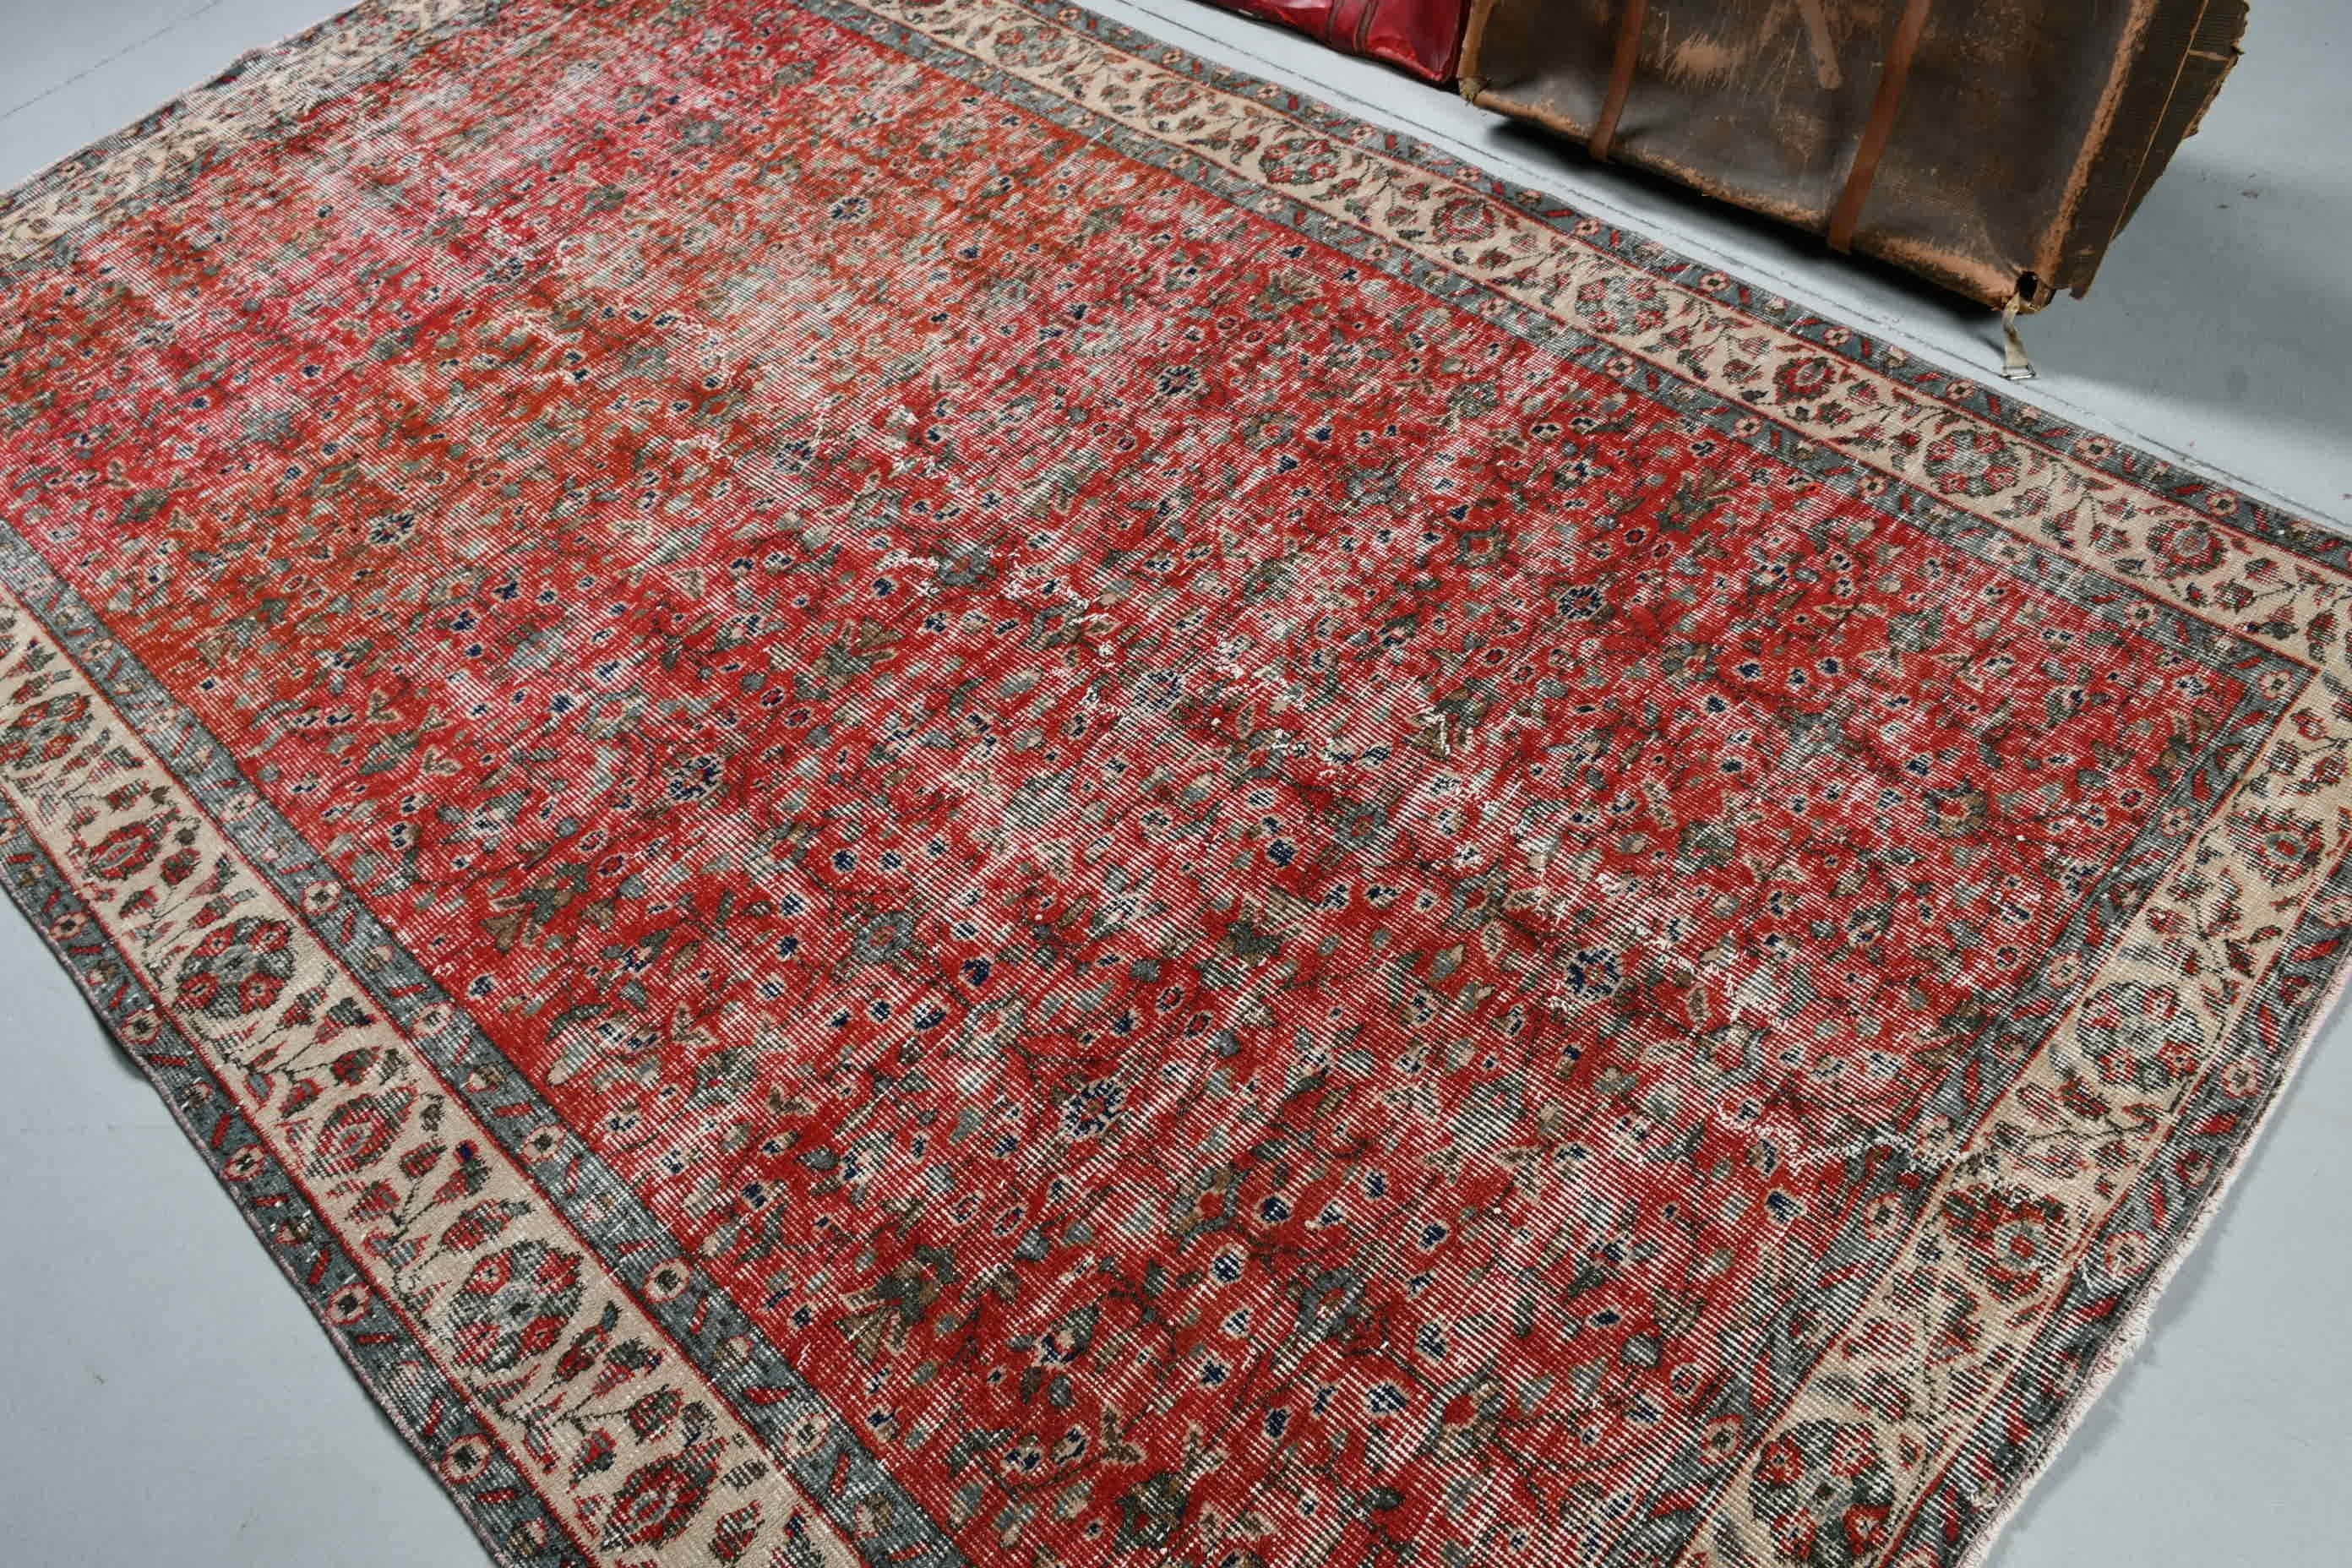 Red Bedroom Rug, Moroccan Rugs, Old Rug, Turkish Rug, Living Room Rugs, Kitchen Rugs, Dining Room Rugs, Vintage Rugs, 5.3x8.8 ft Large Rugs